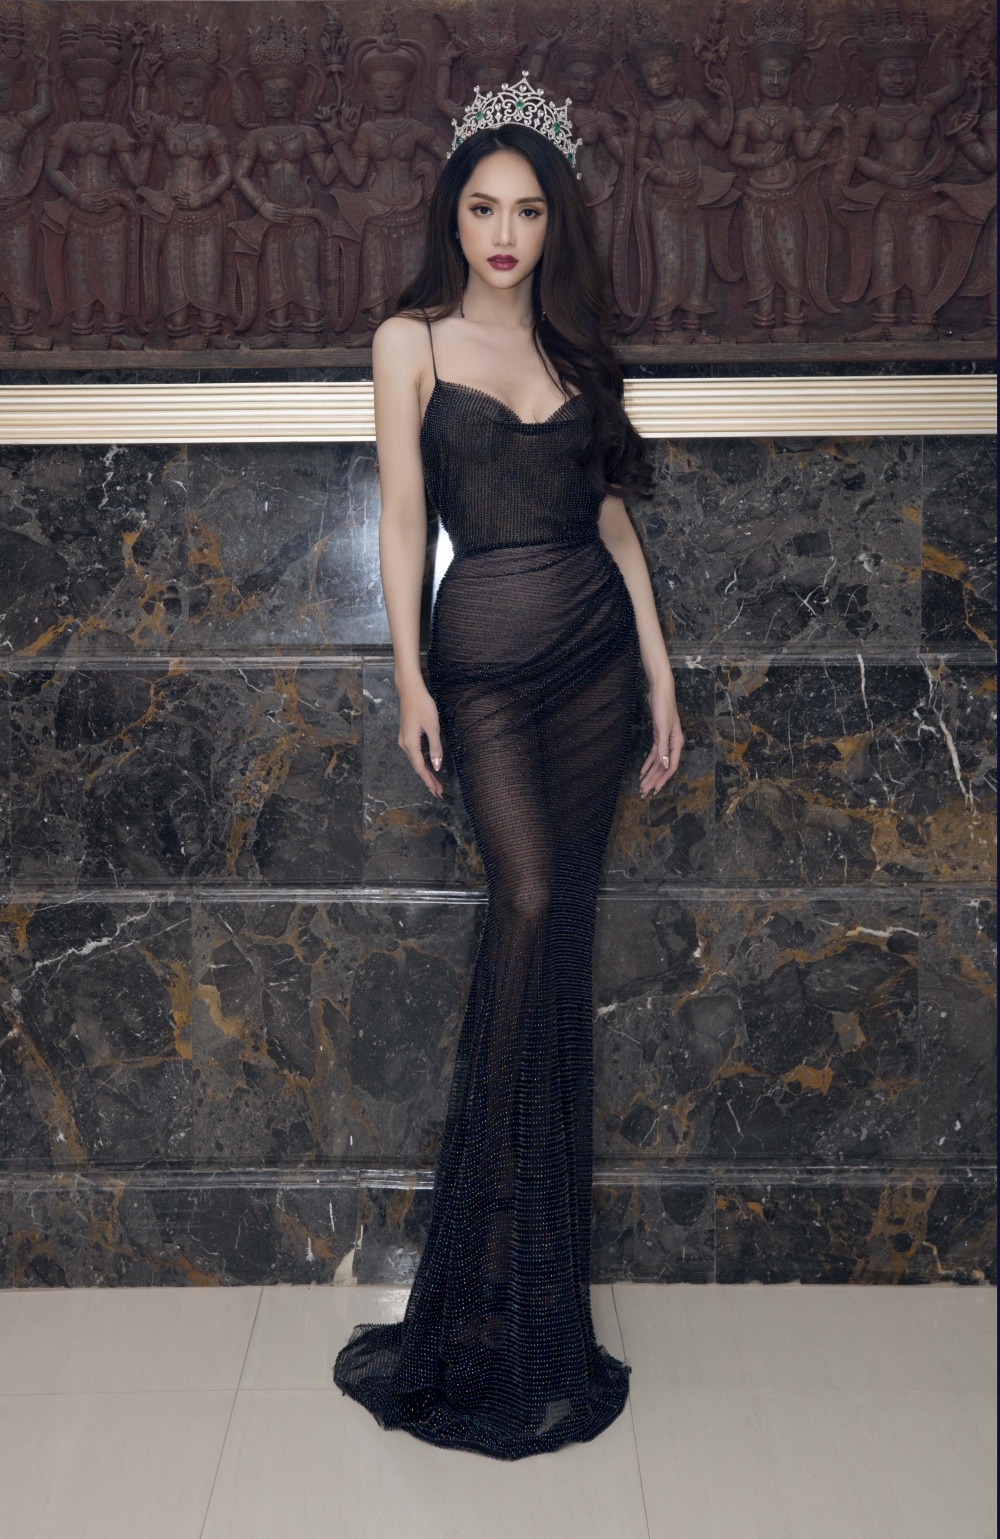 
Khoác lên mình bộ váy đen của NTK Đỗ Long, Hương Giang thật sự trở thành tâm điểm của ánh nhìn.